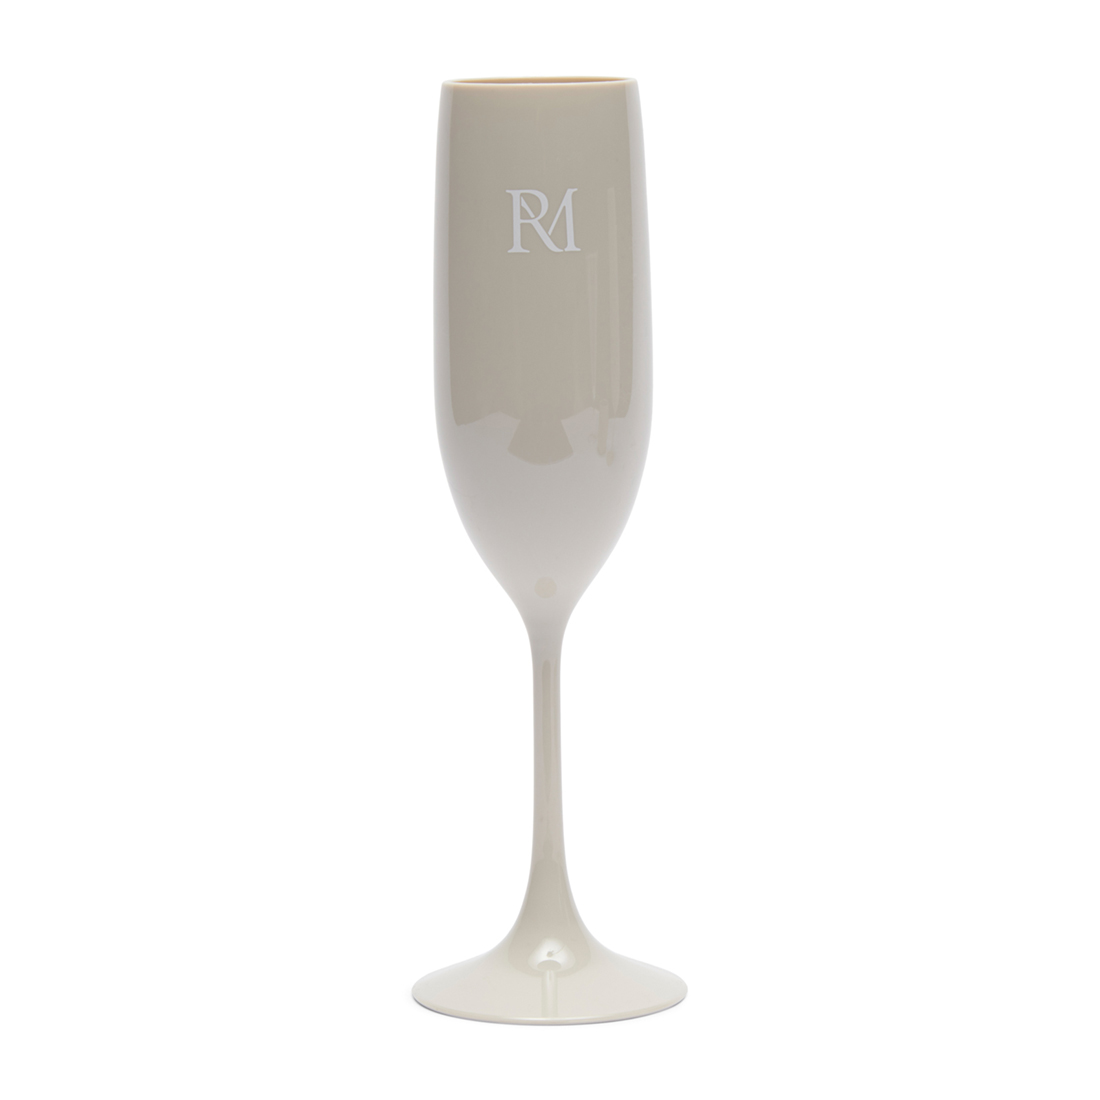 Riviera Maison RM Monogram Outdoor Bubbles Glass - Ms - 4.5x4.5x22.5 cm